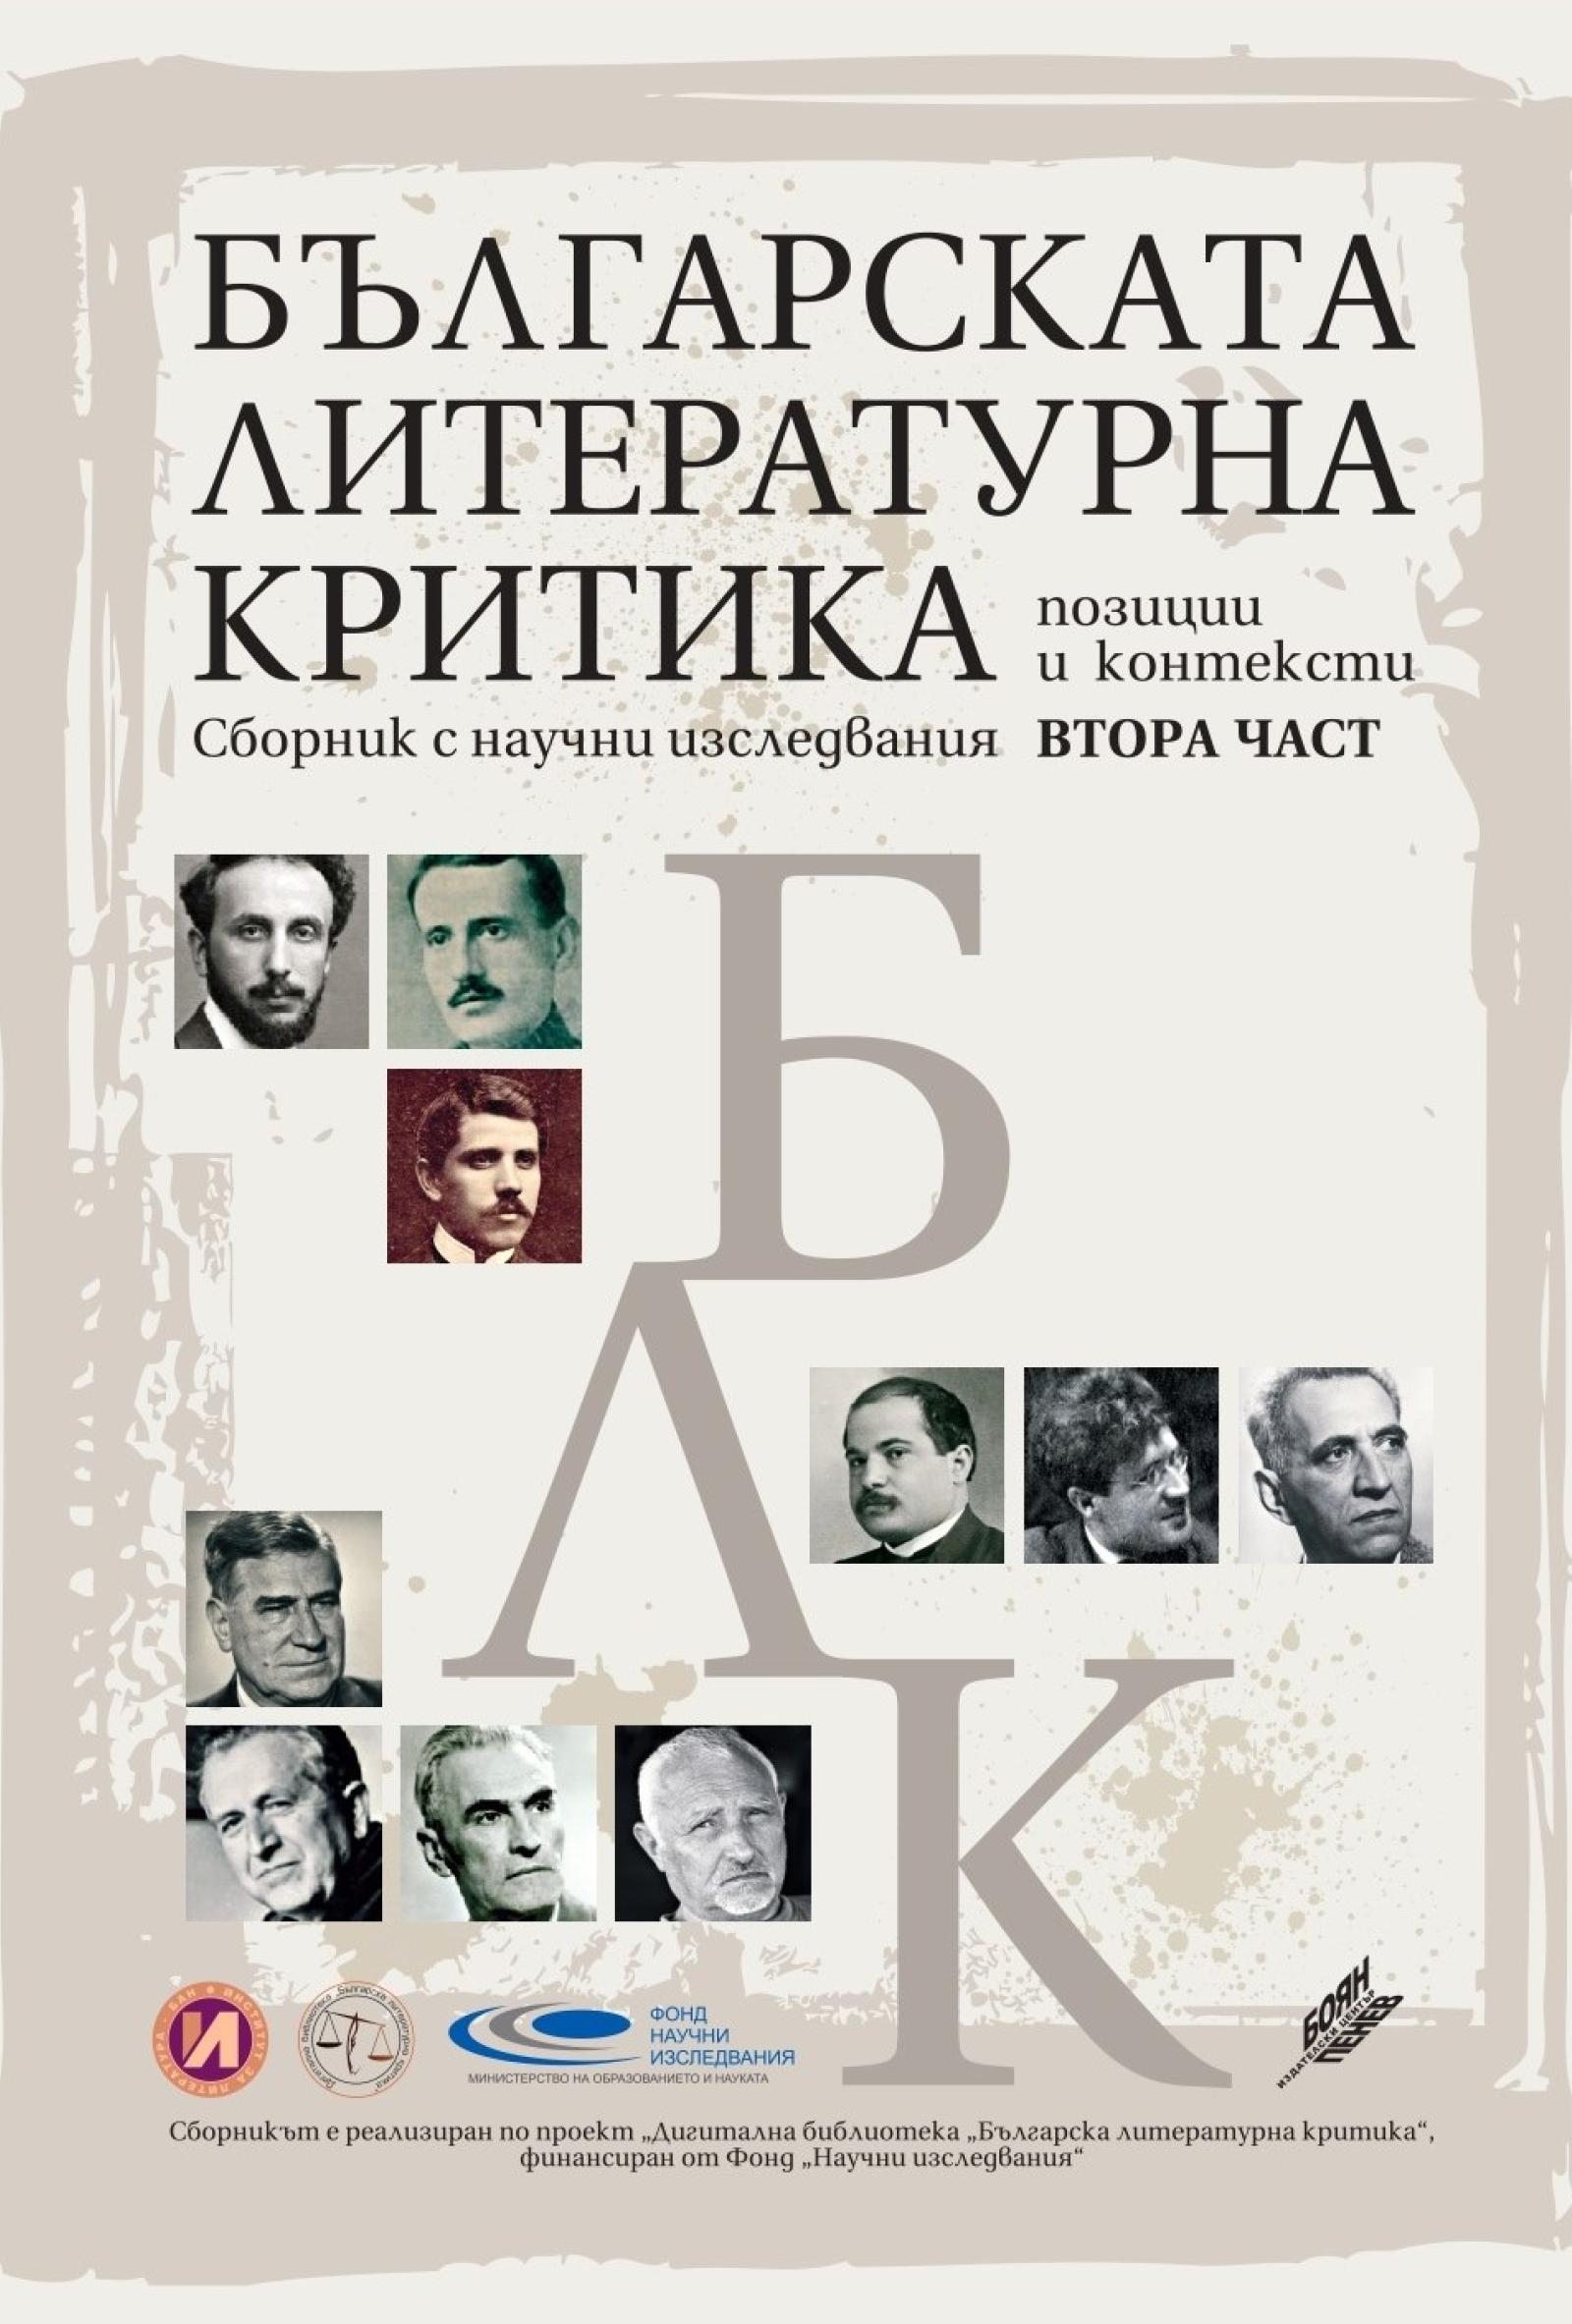 Българската литературна критика 